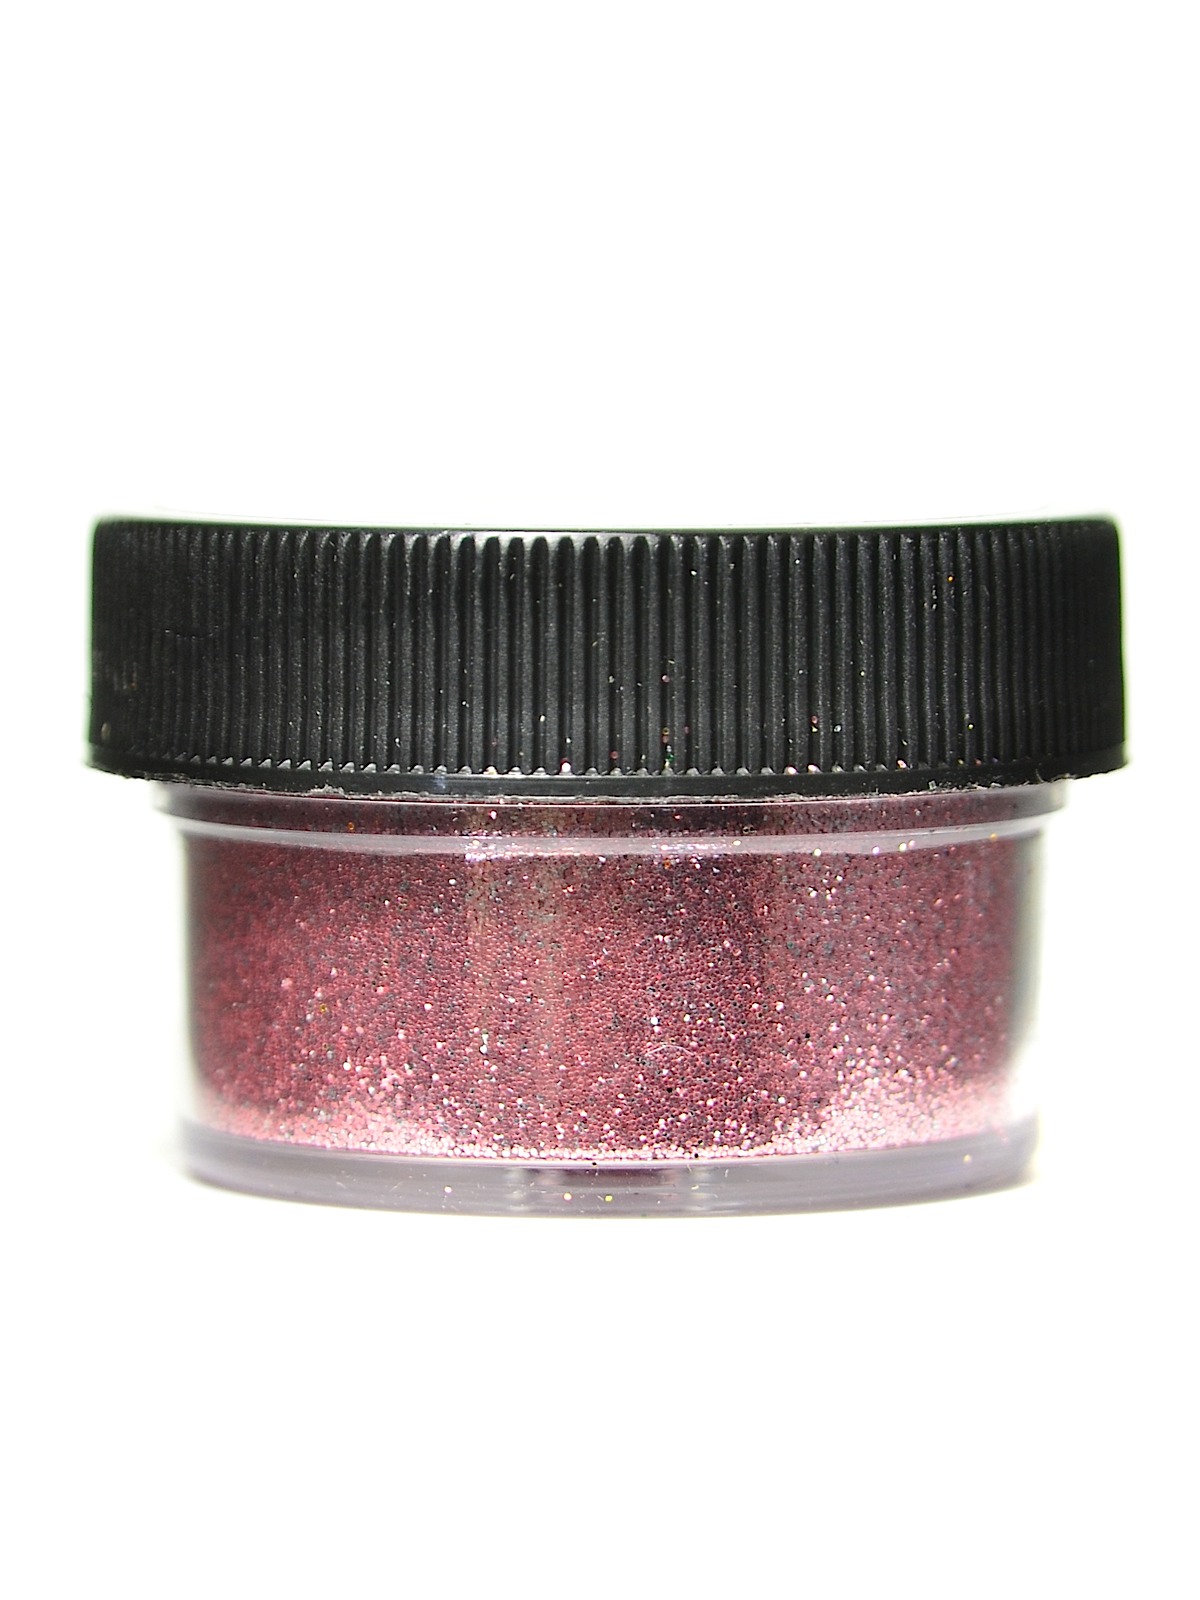 Ultrafine Opaque Glitter Baby Pink 1 2 Oz. Jar